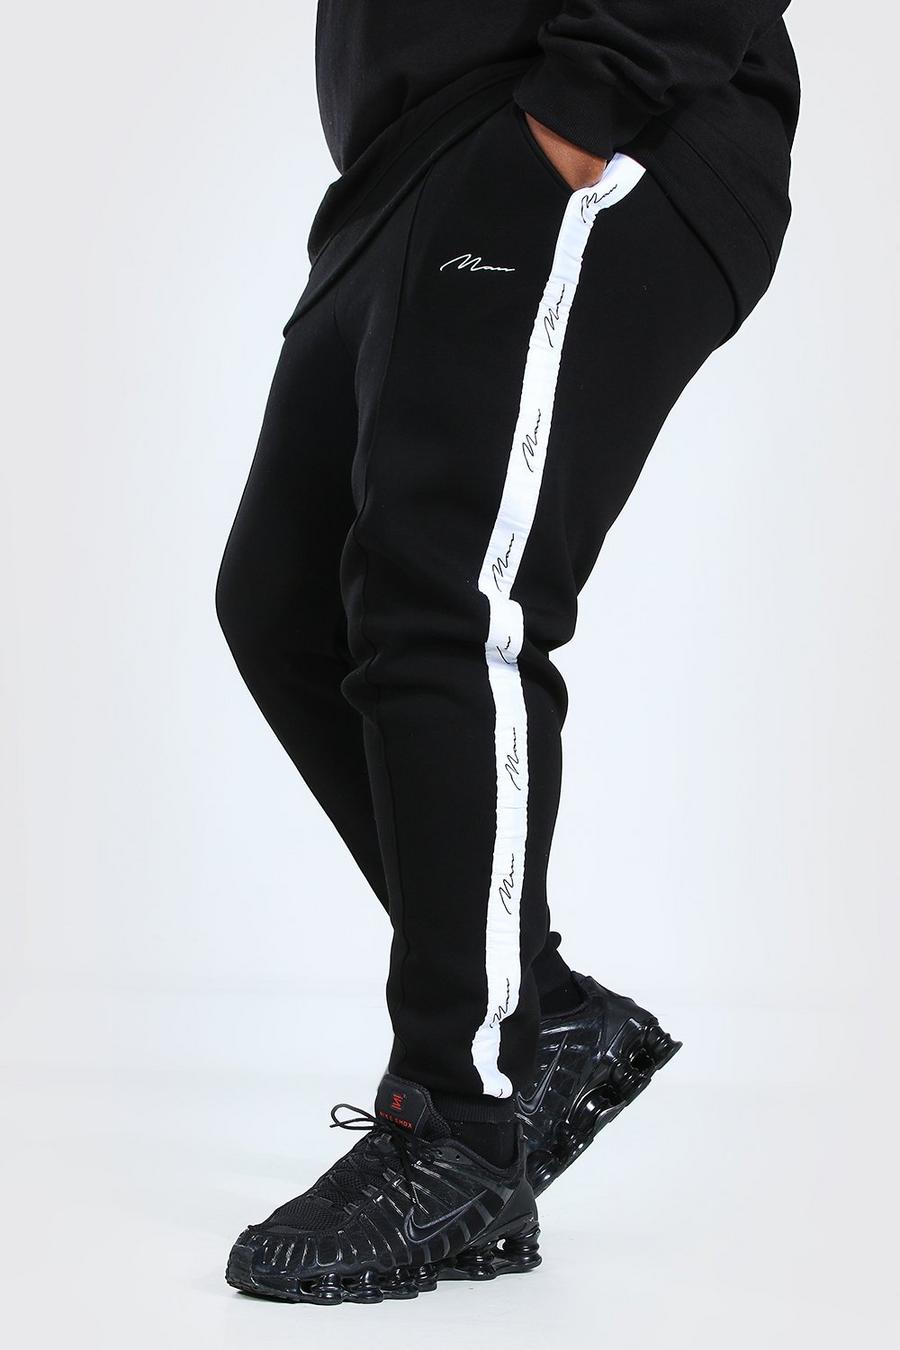 שחור מכנסי ריצה סקיני עם קפל תפור וכיתוב MAN למידות גדולות image number 1